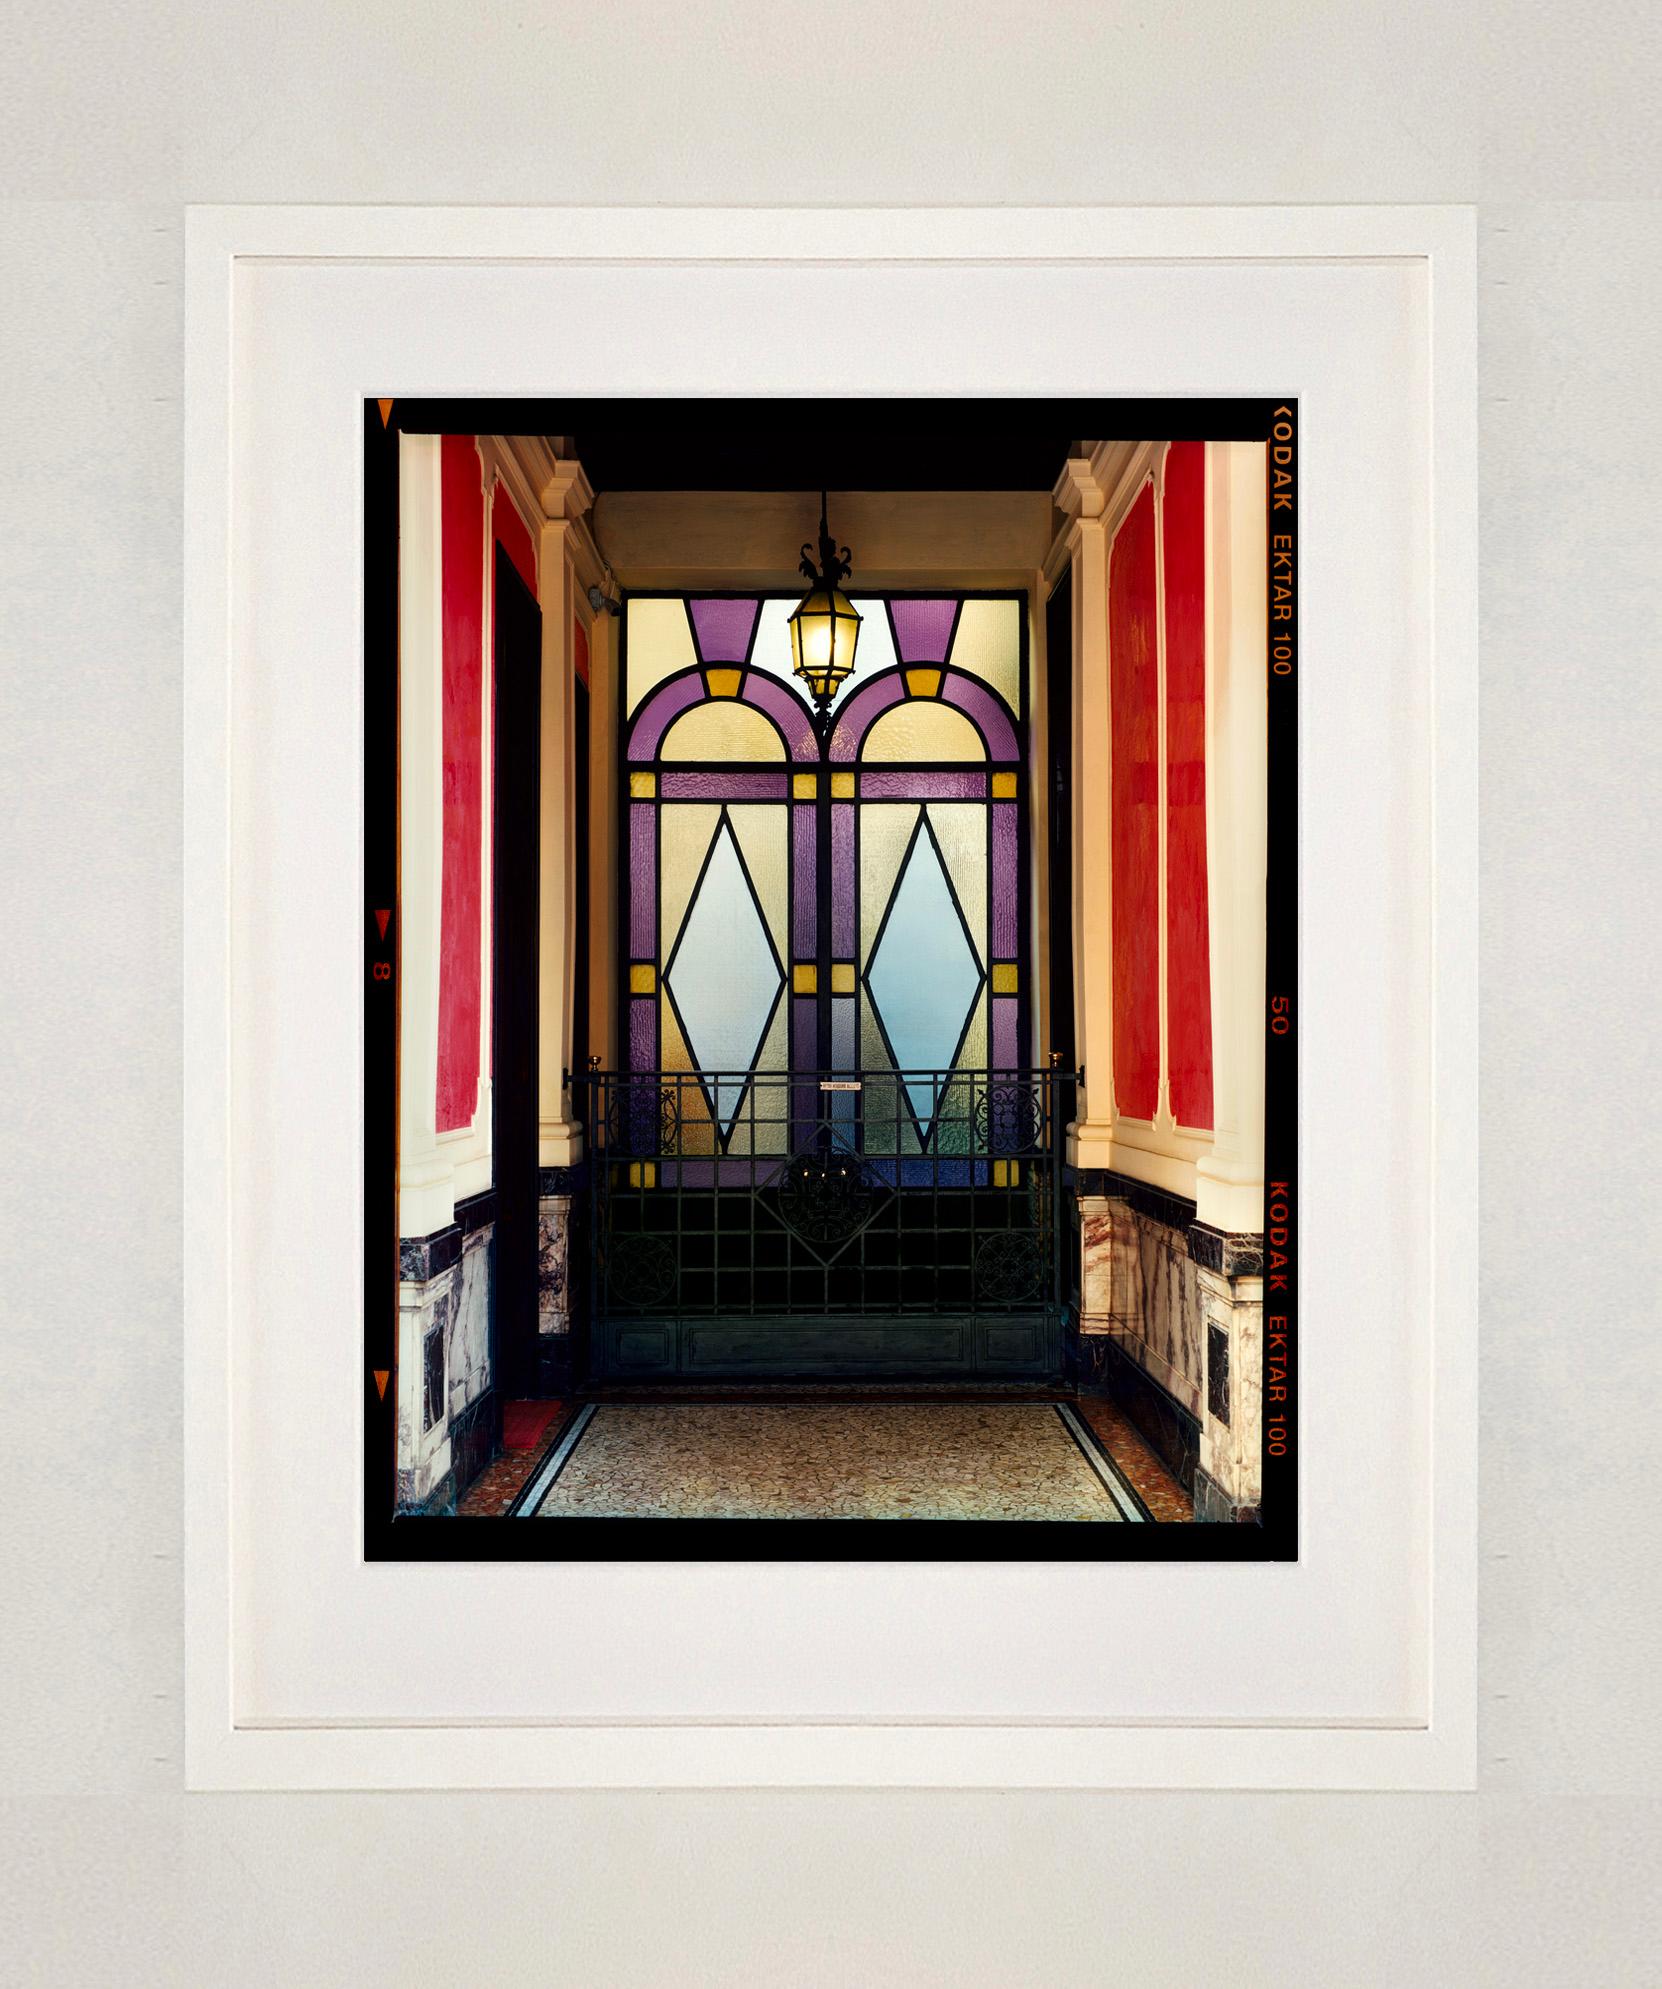 Foyer VII, Mailand - Italienische architektonische Farbfotografie (Zeitgenössisch), Photograph, von Richard Heeps